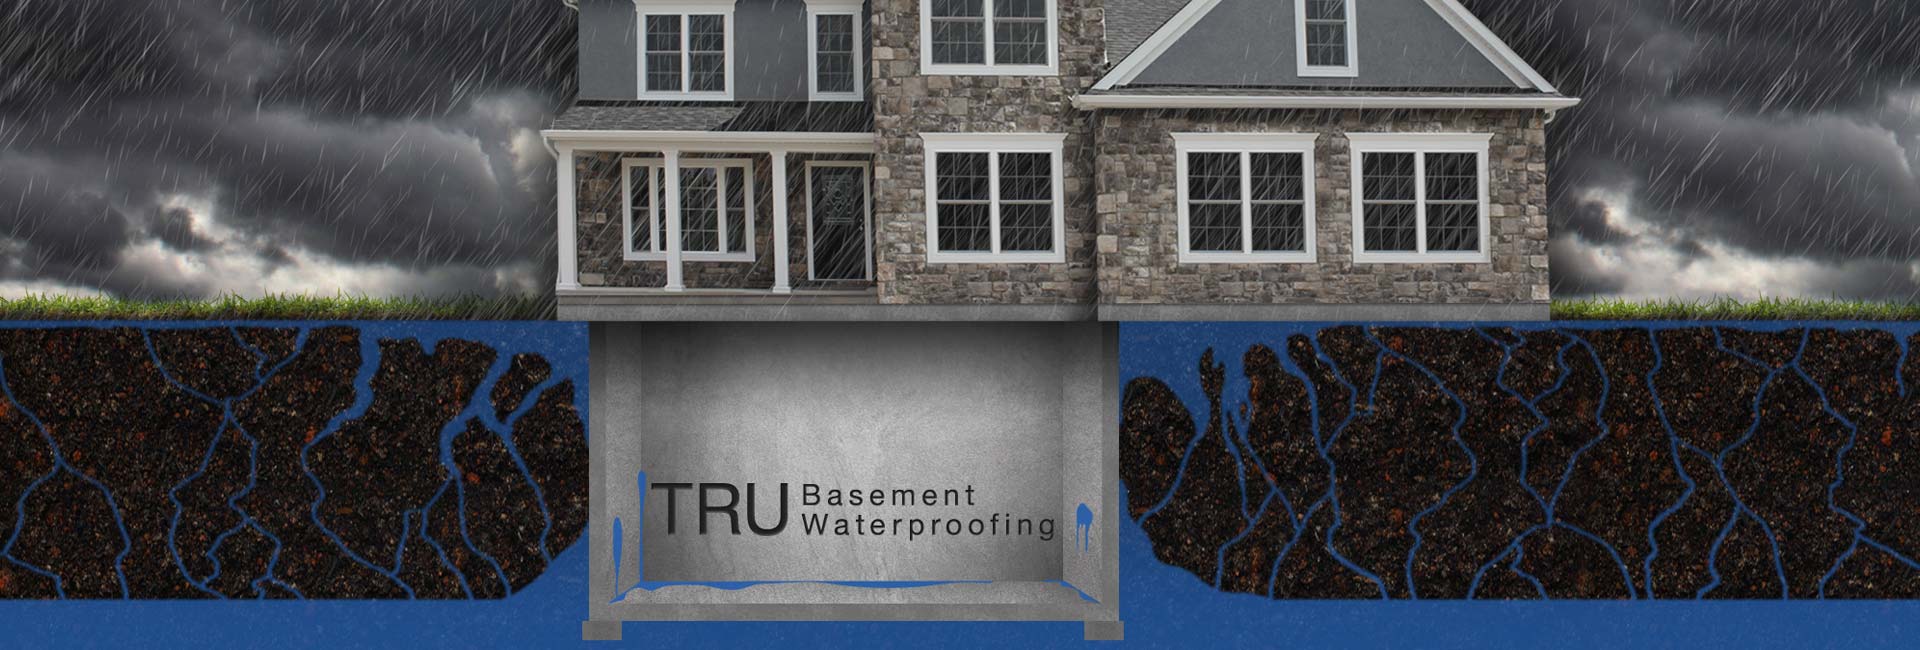 TRU Waterproofing and Foundation Repair